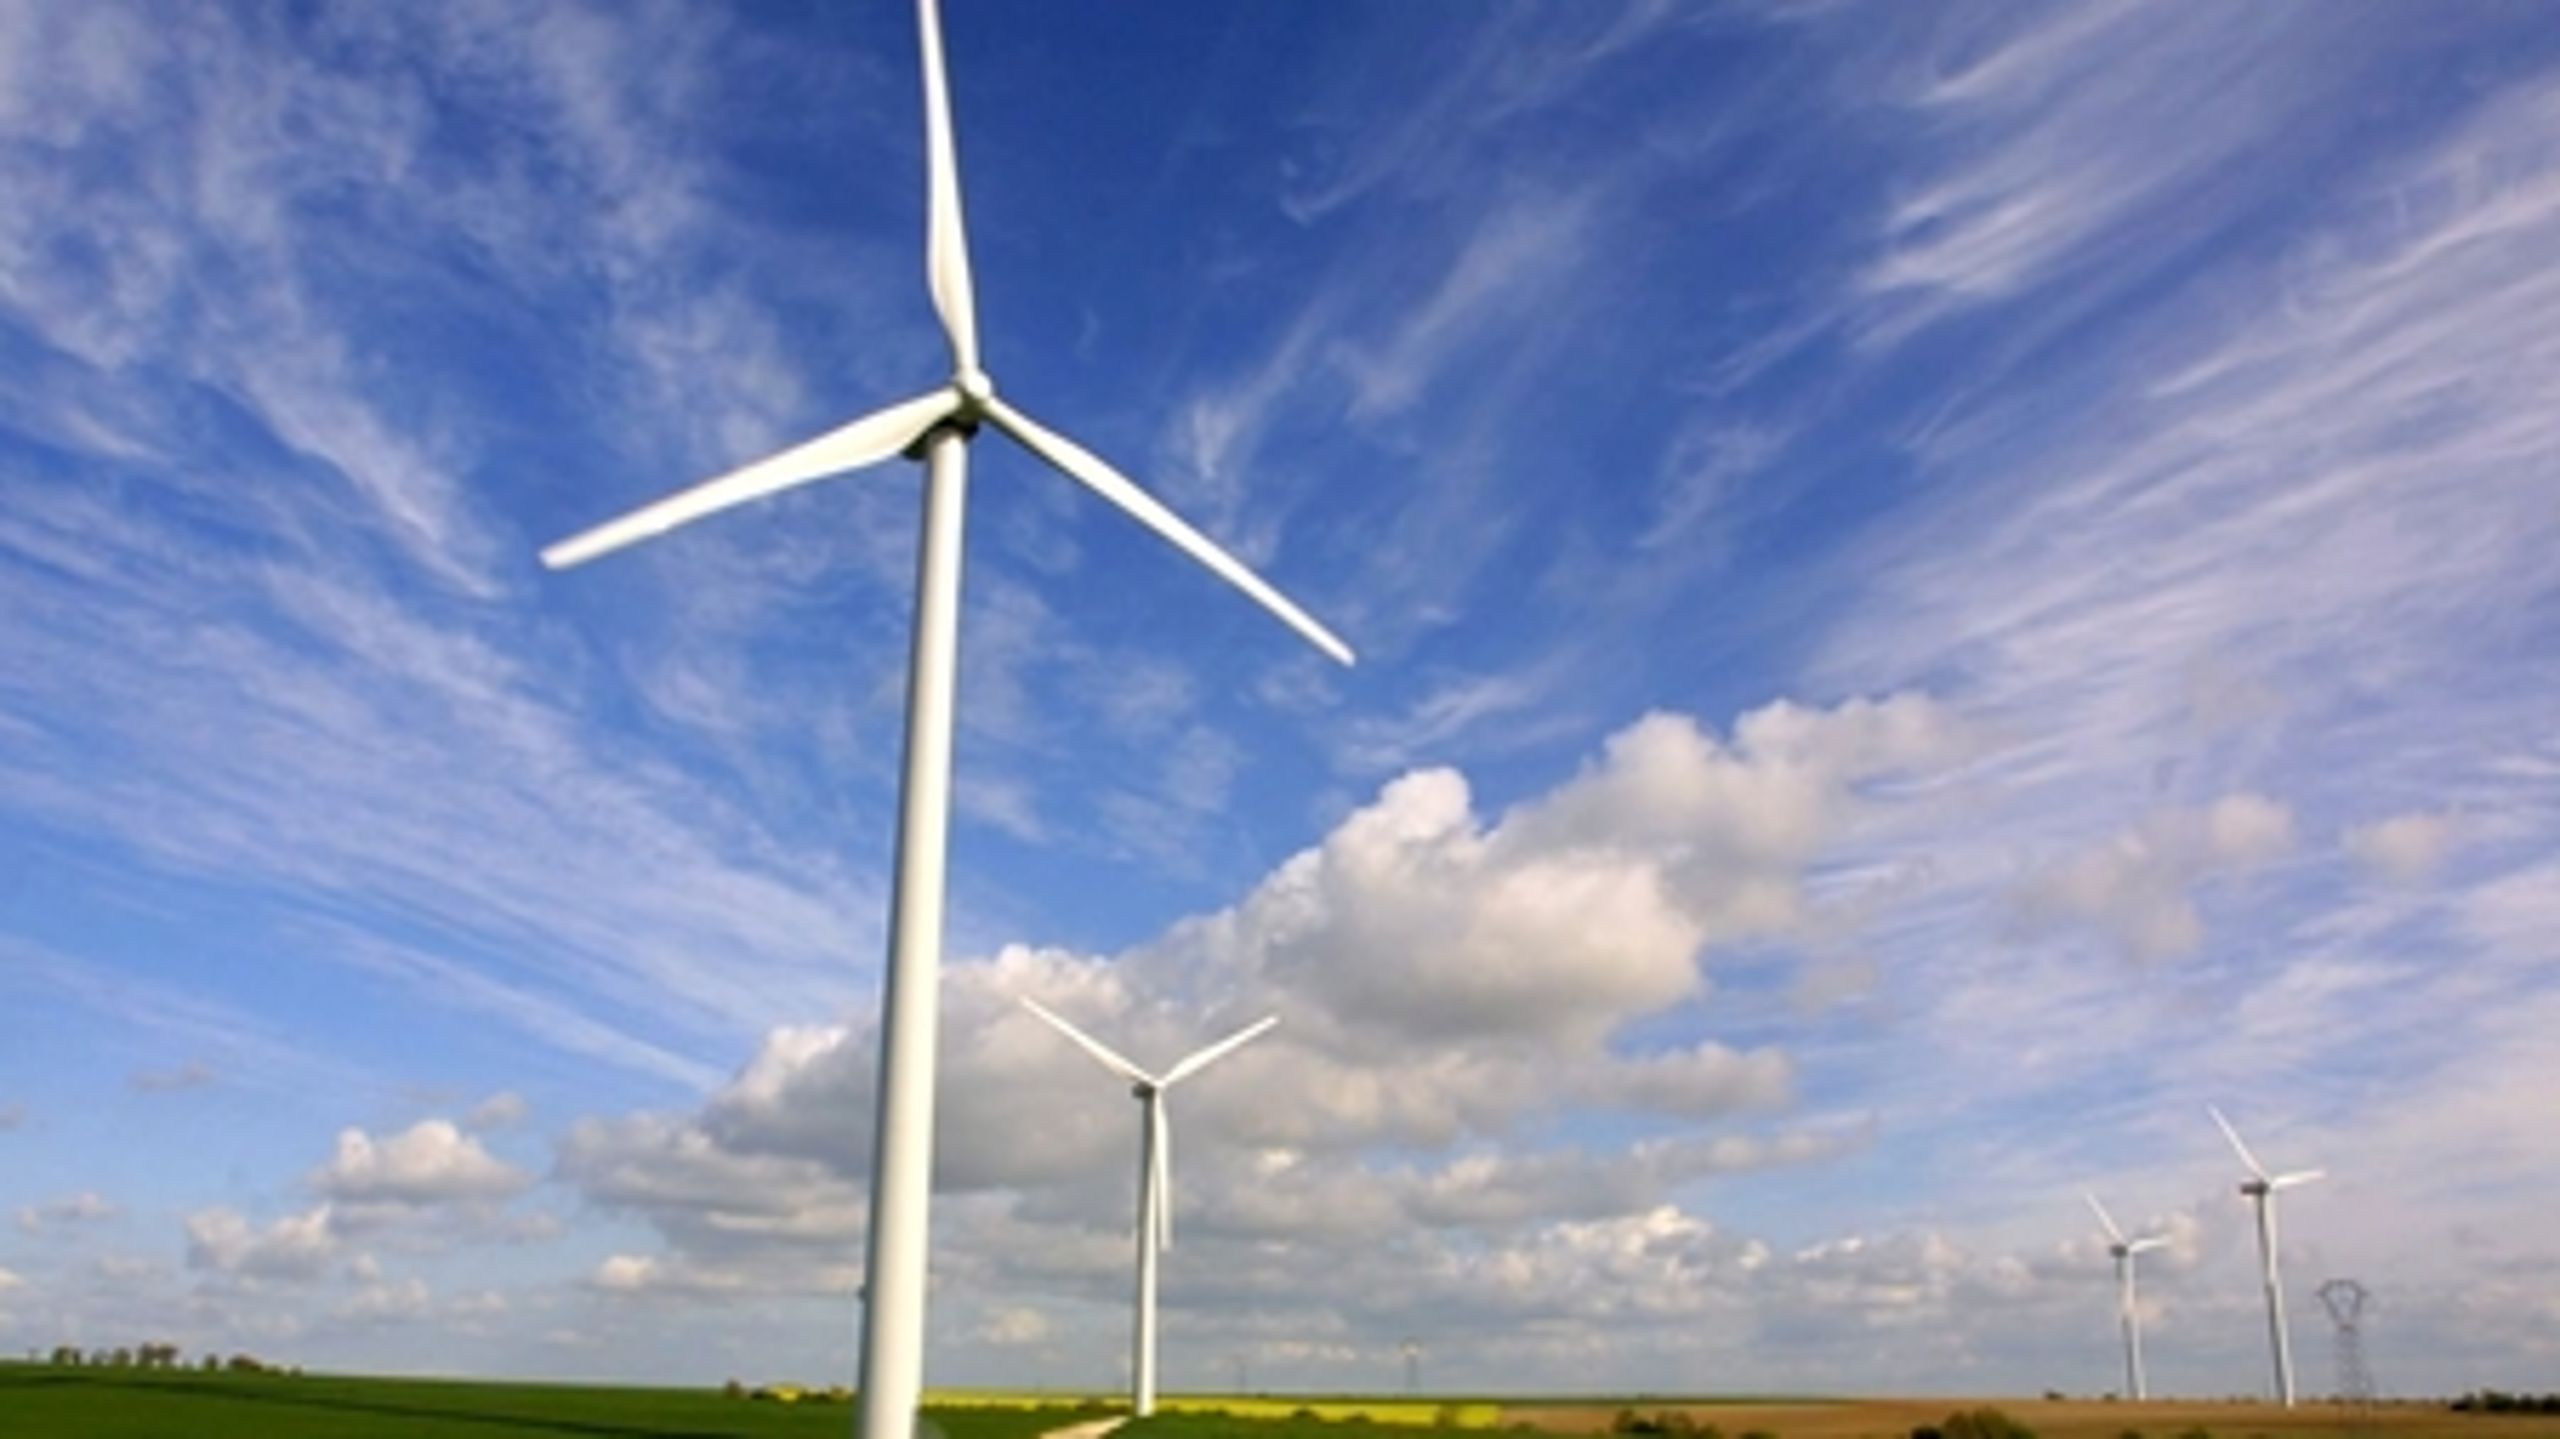 Halvdelen af el-forbruget i 2020 skal komme fra vindkraft, skriver oppositionen i den energivision, som blev lanceret tirsdag.